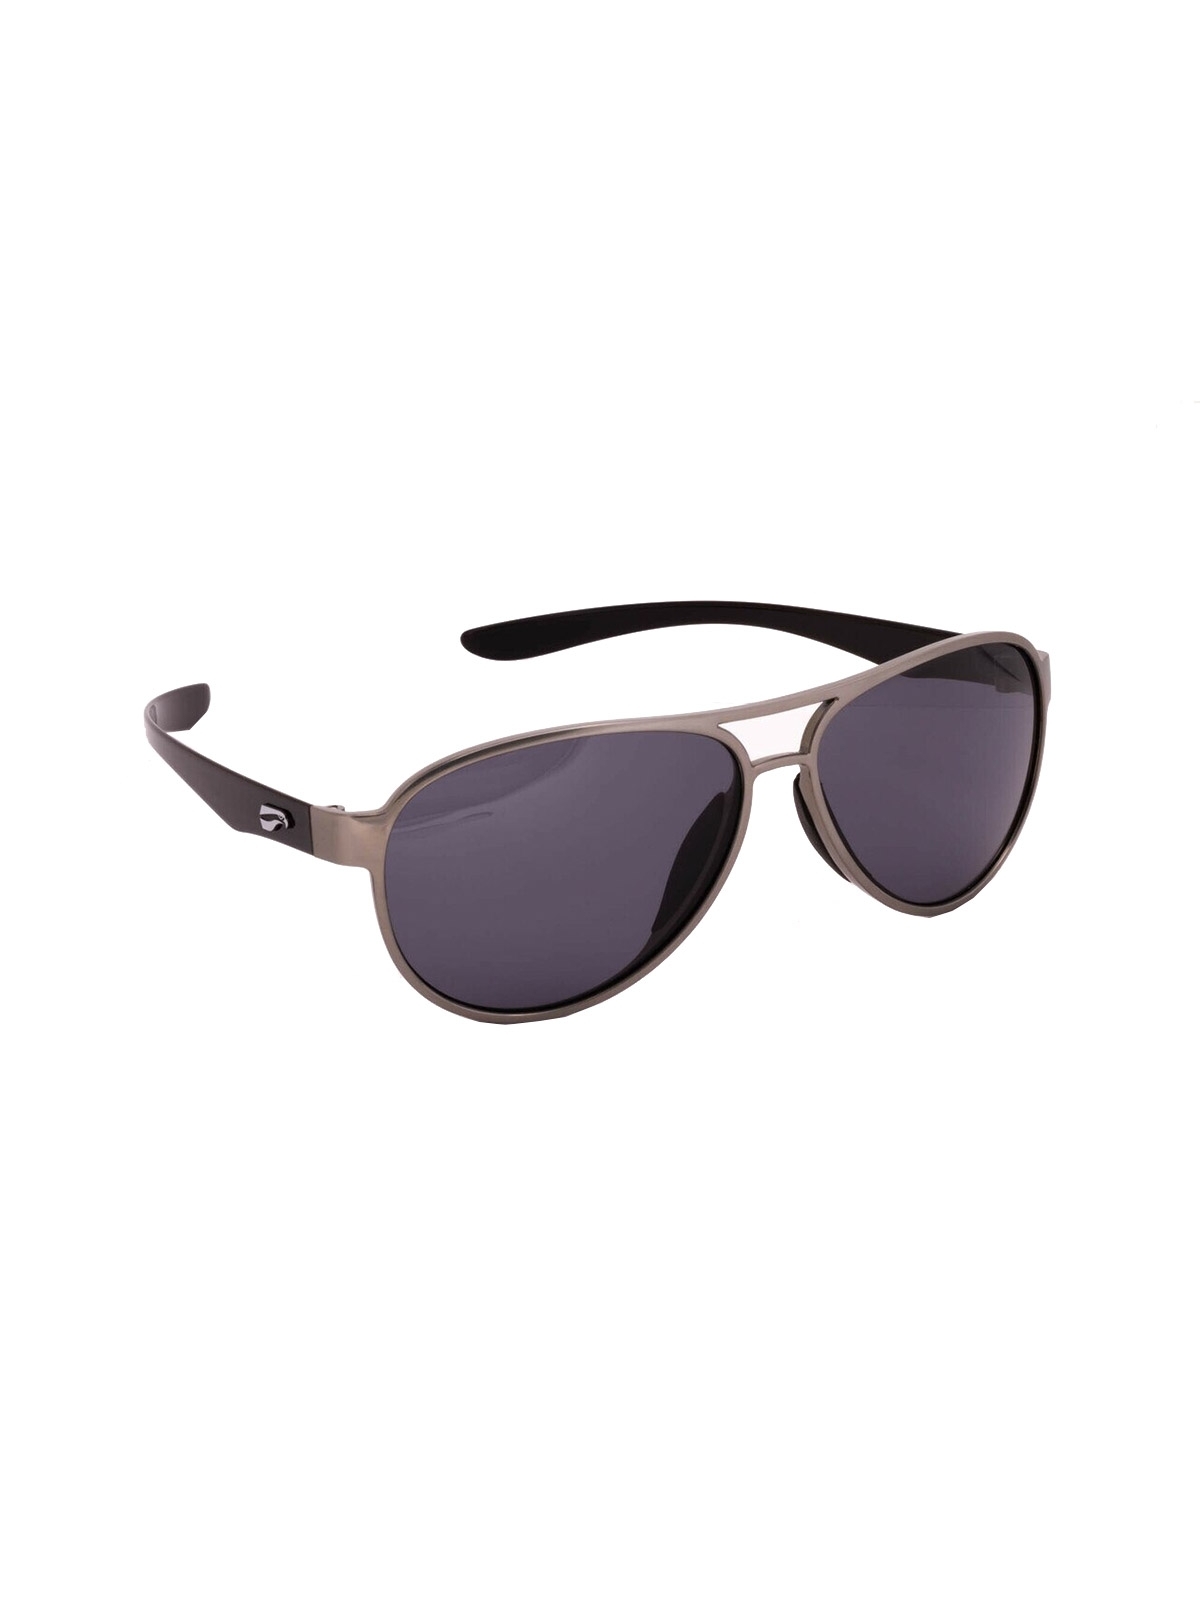 Flying Eyes Sonnenbrille Kestrel Aviator - Rahmen silberfarben mit schwarzen Bügeln, Linsen grau